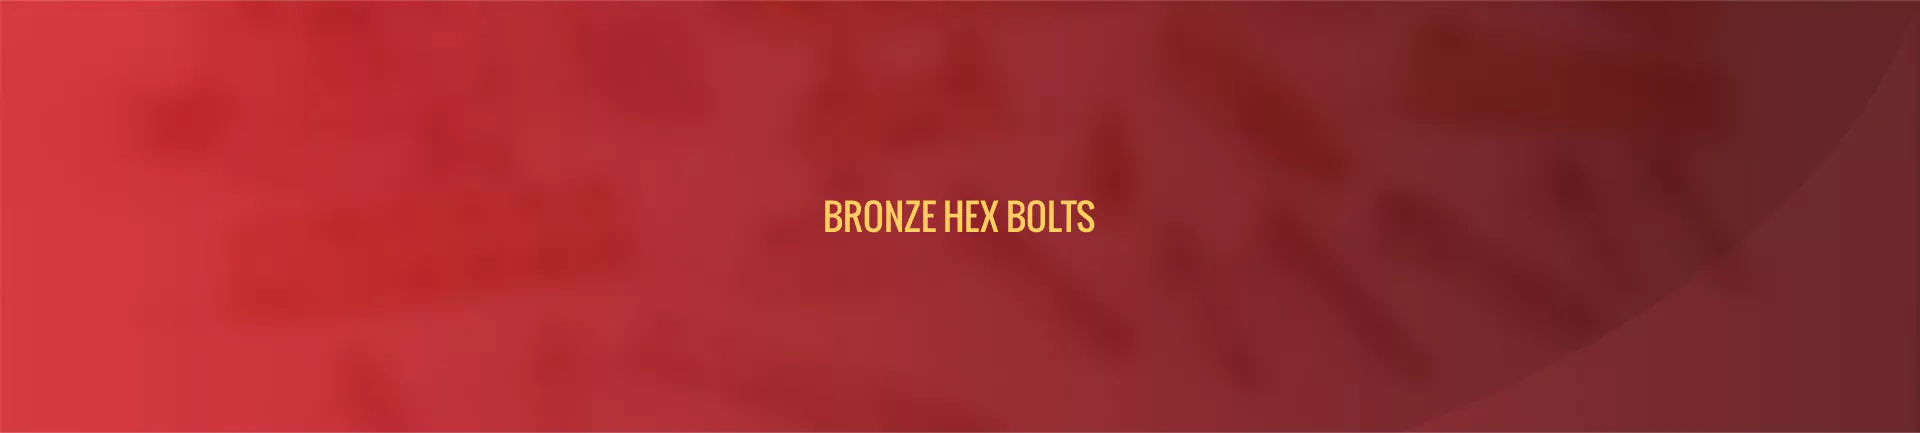 bronze-hex-bolts-banner